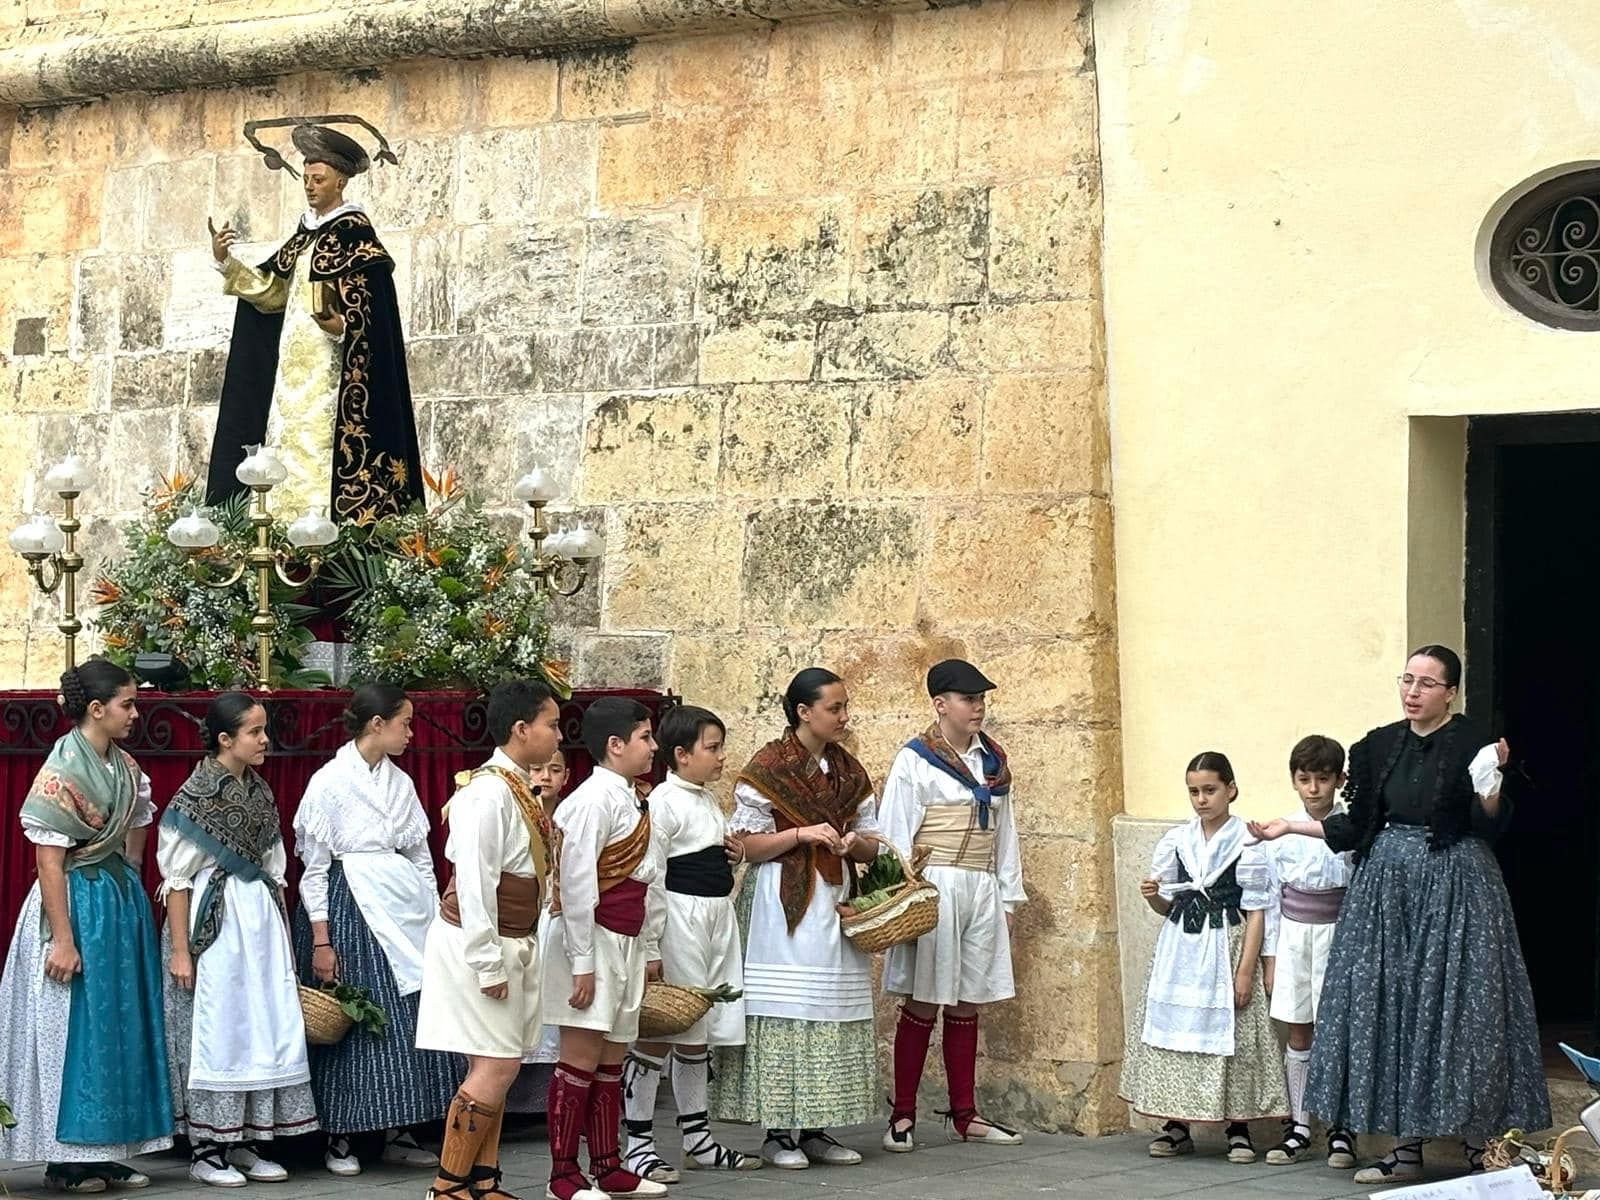 El grupo Torrent Ball representa el "Milagro del Mocadoret" de Sant Vicent Ferrer